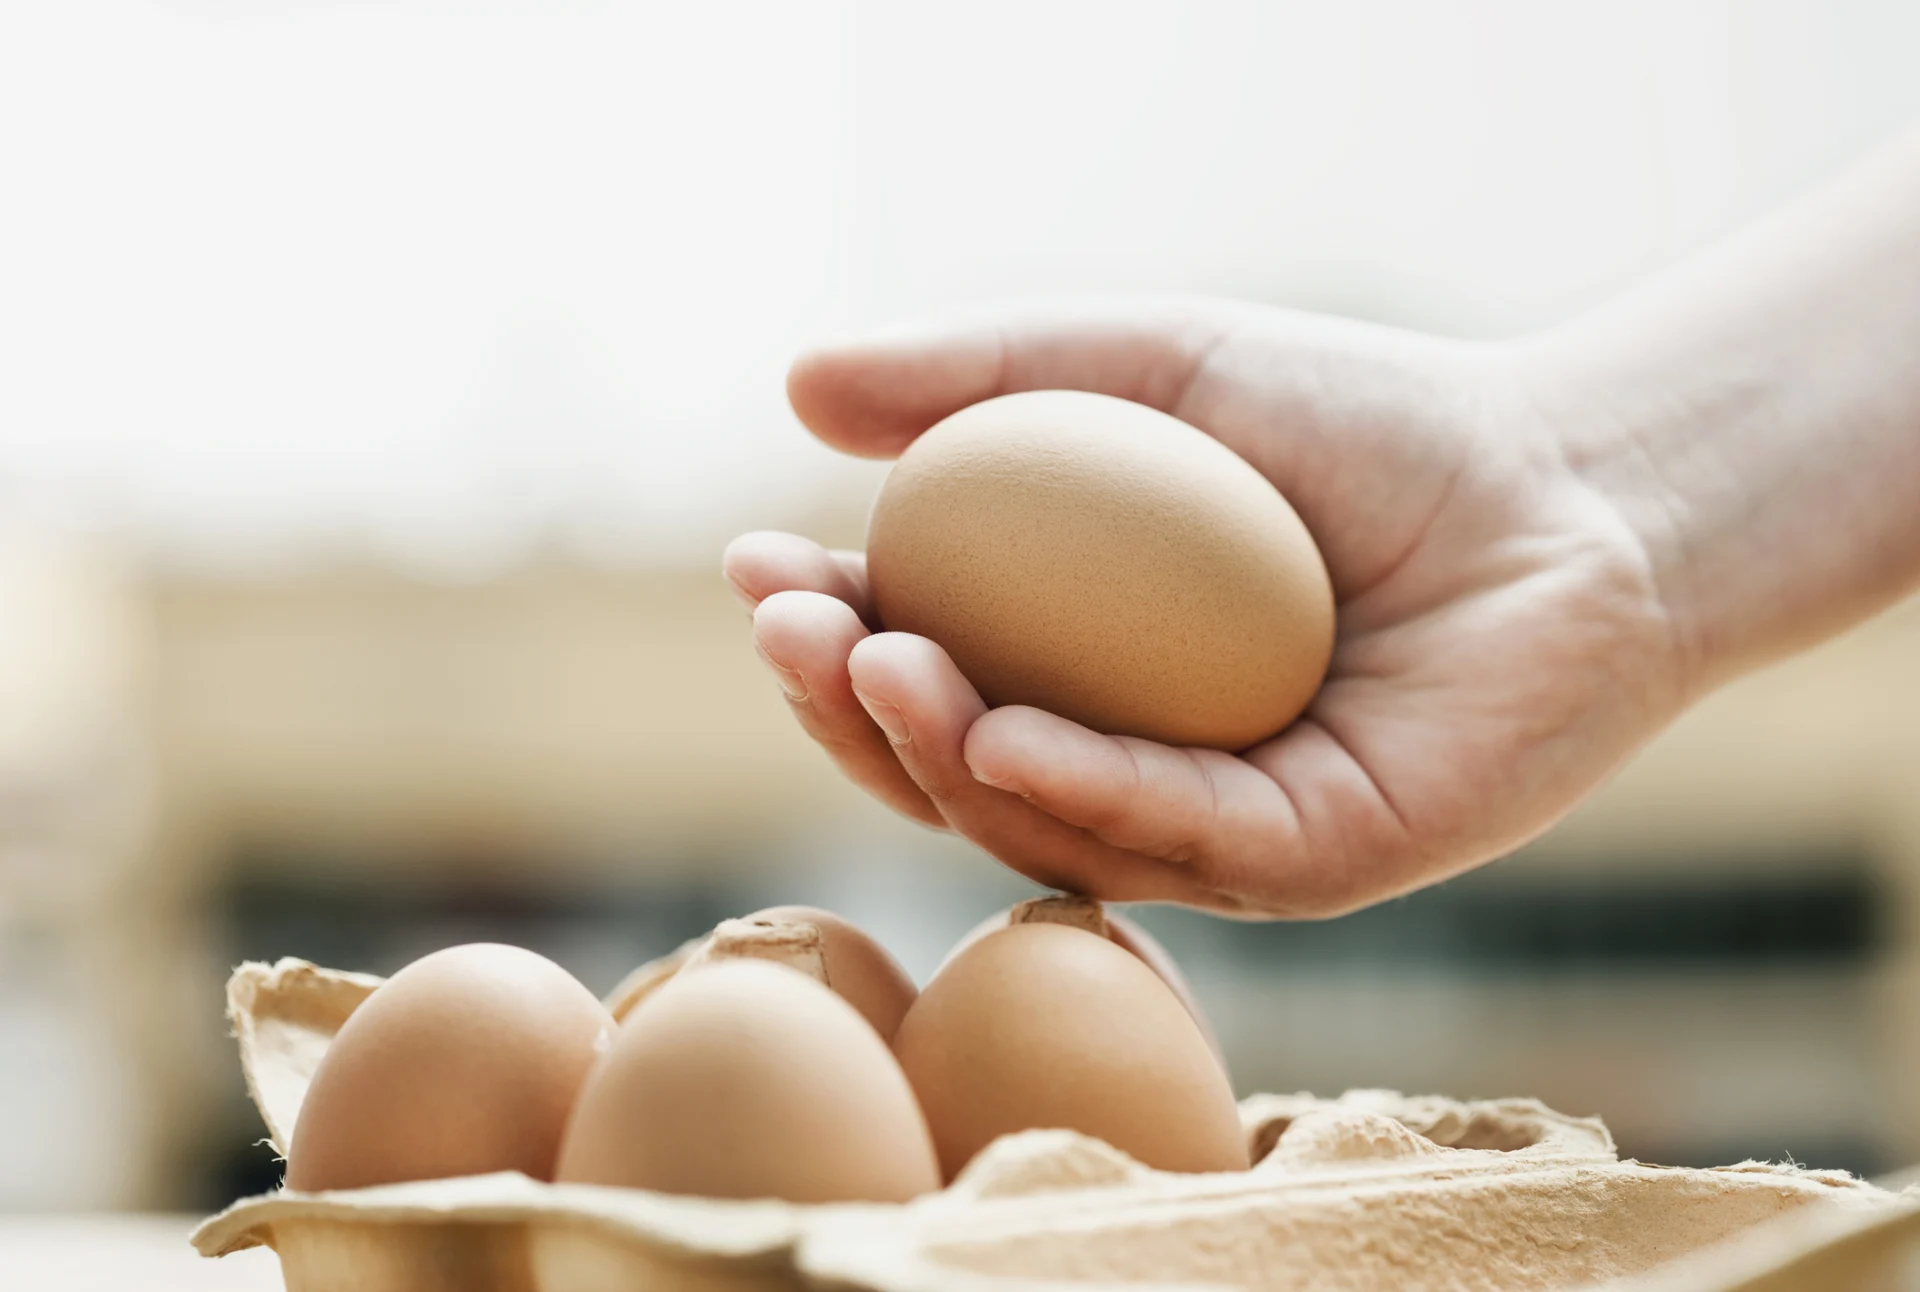 Ein braunes Ei liegt sanft in einer Hand über einer Schachtel mit weiteren Eiern.